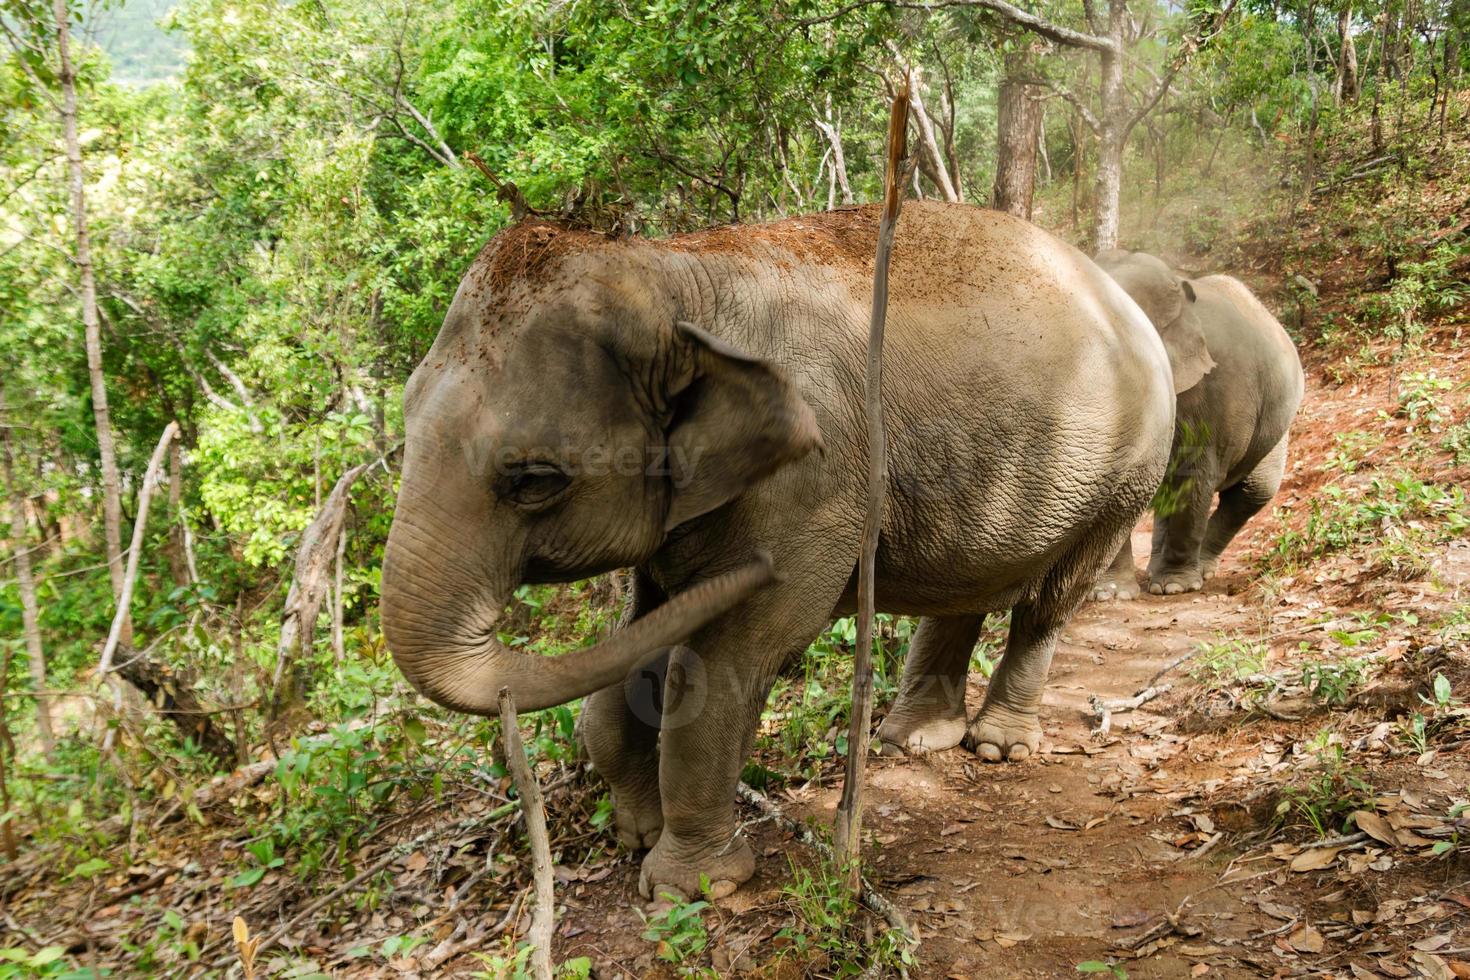 olifant wandelen door de regenwoud. Chiang mai provincie, Thailand. foto